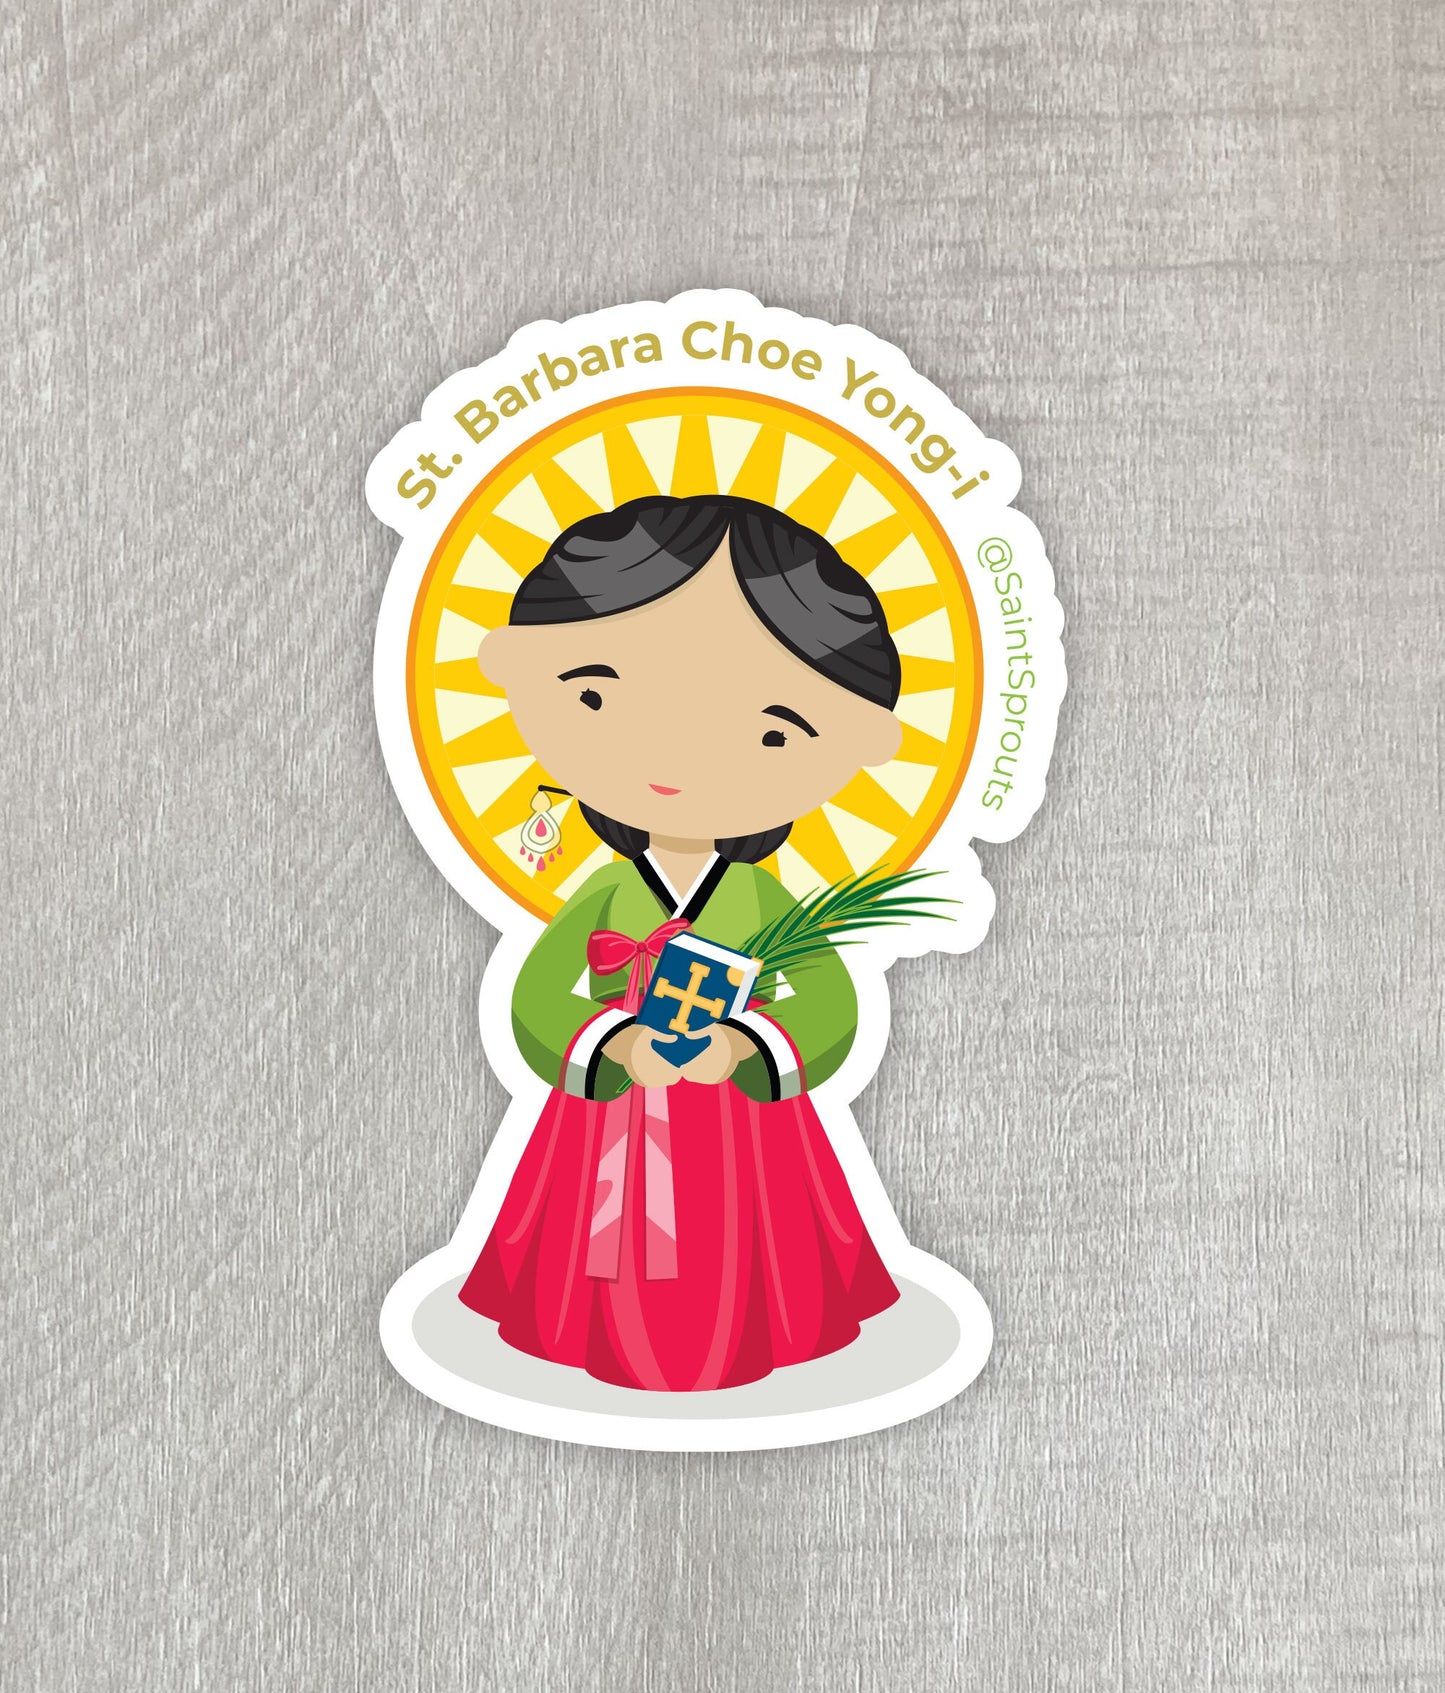 St. Barbara Choe Yong-i Sticker